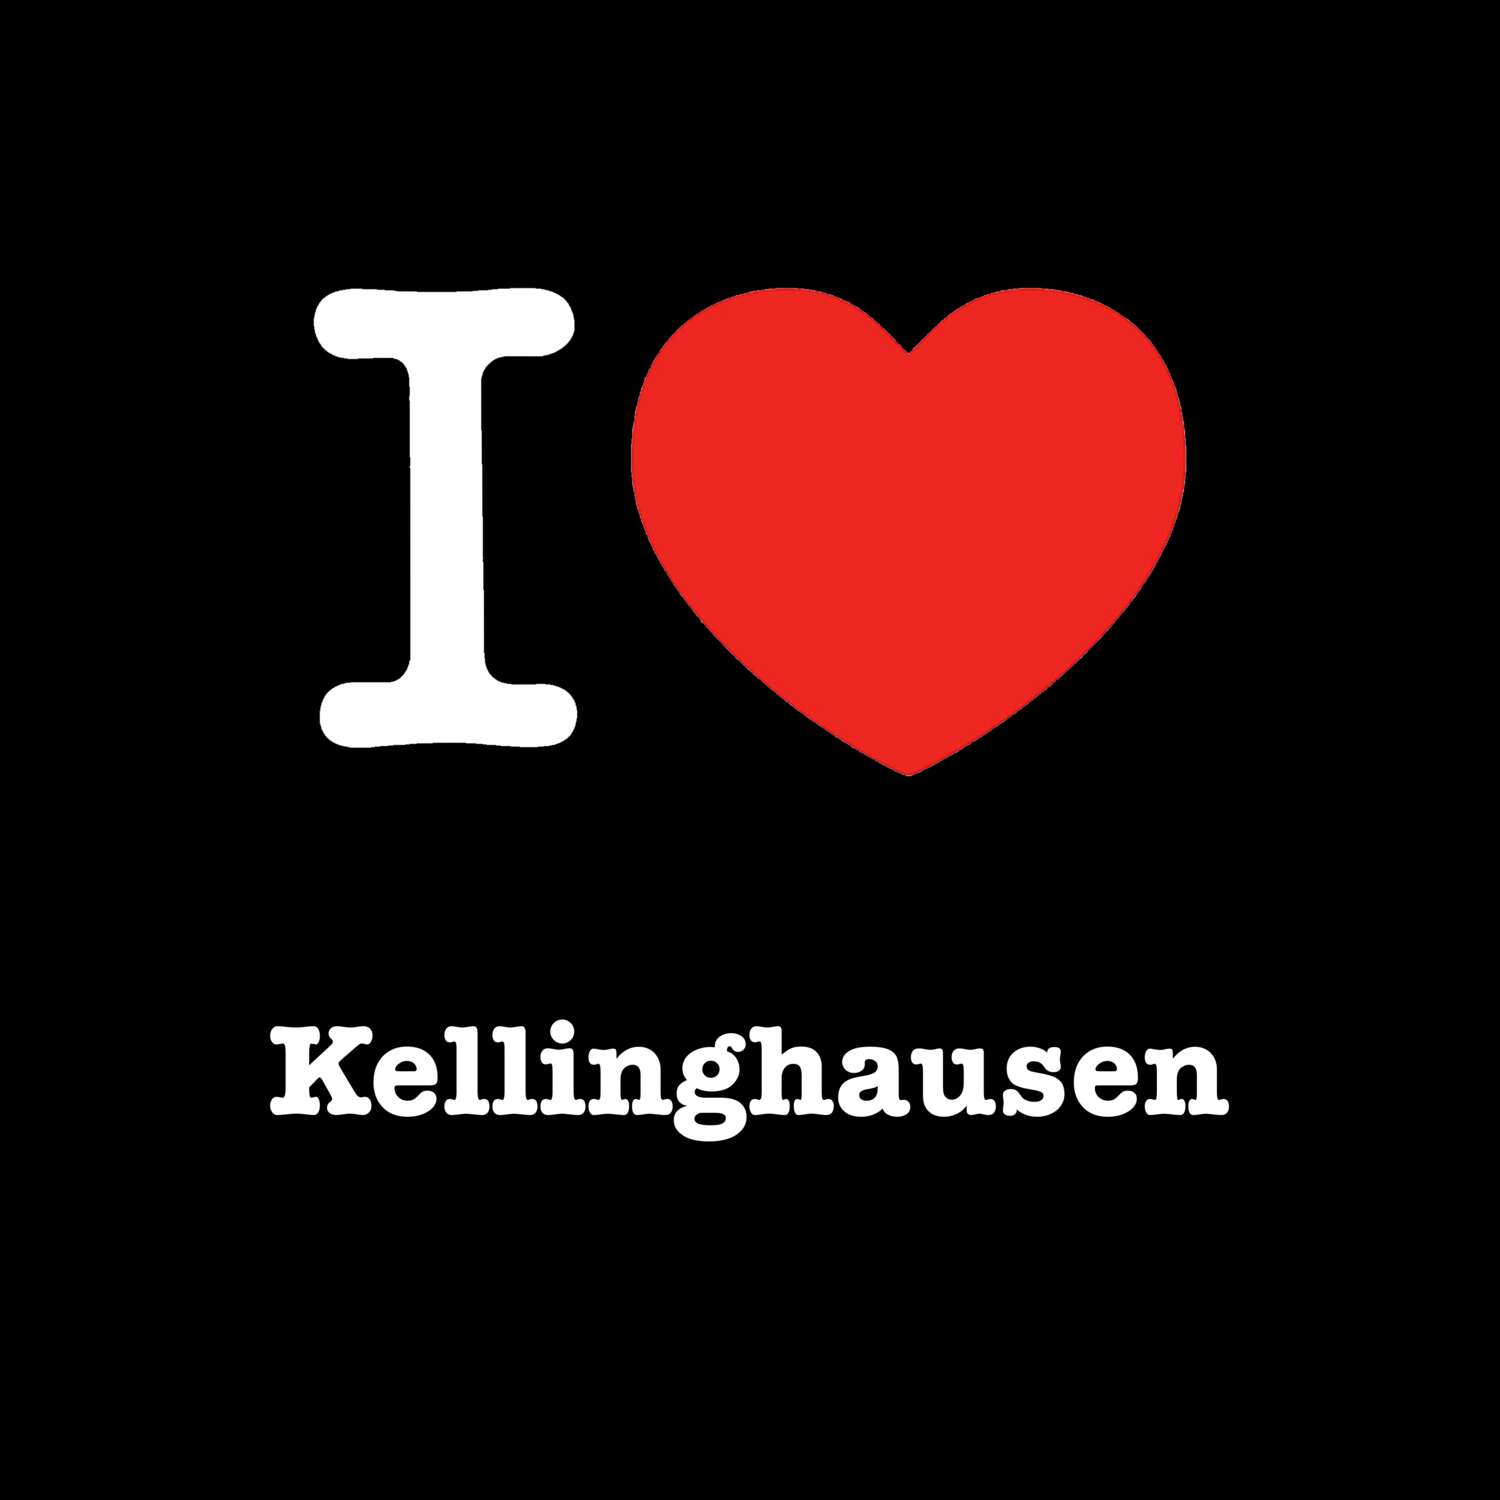 Kellinghausen T-Shirt »I love«